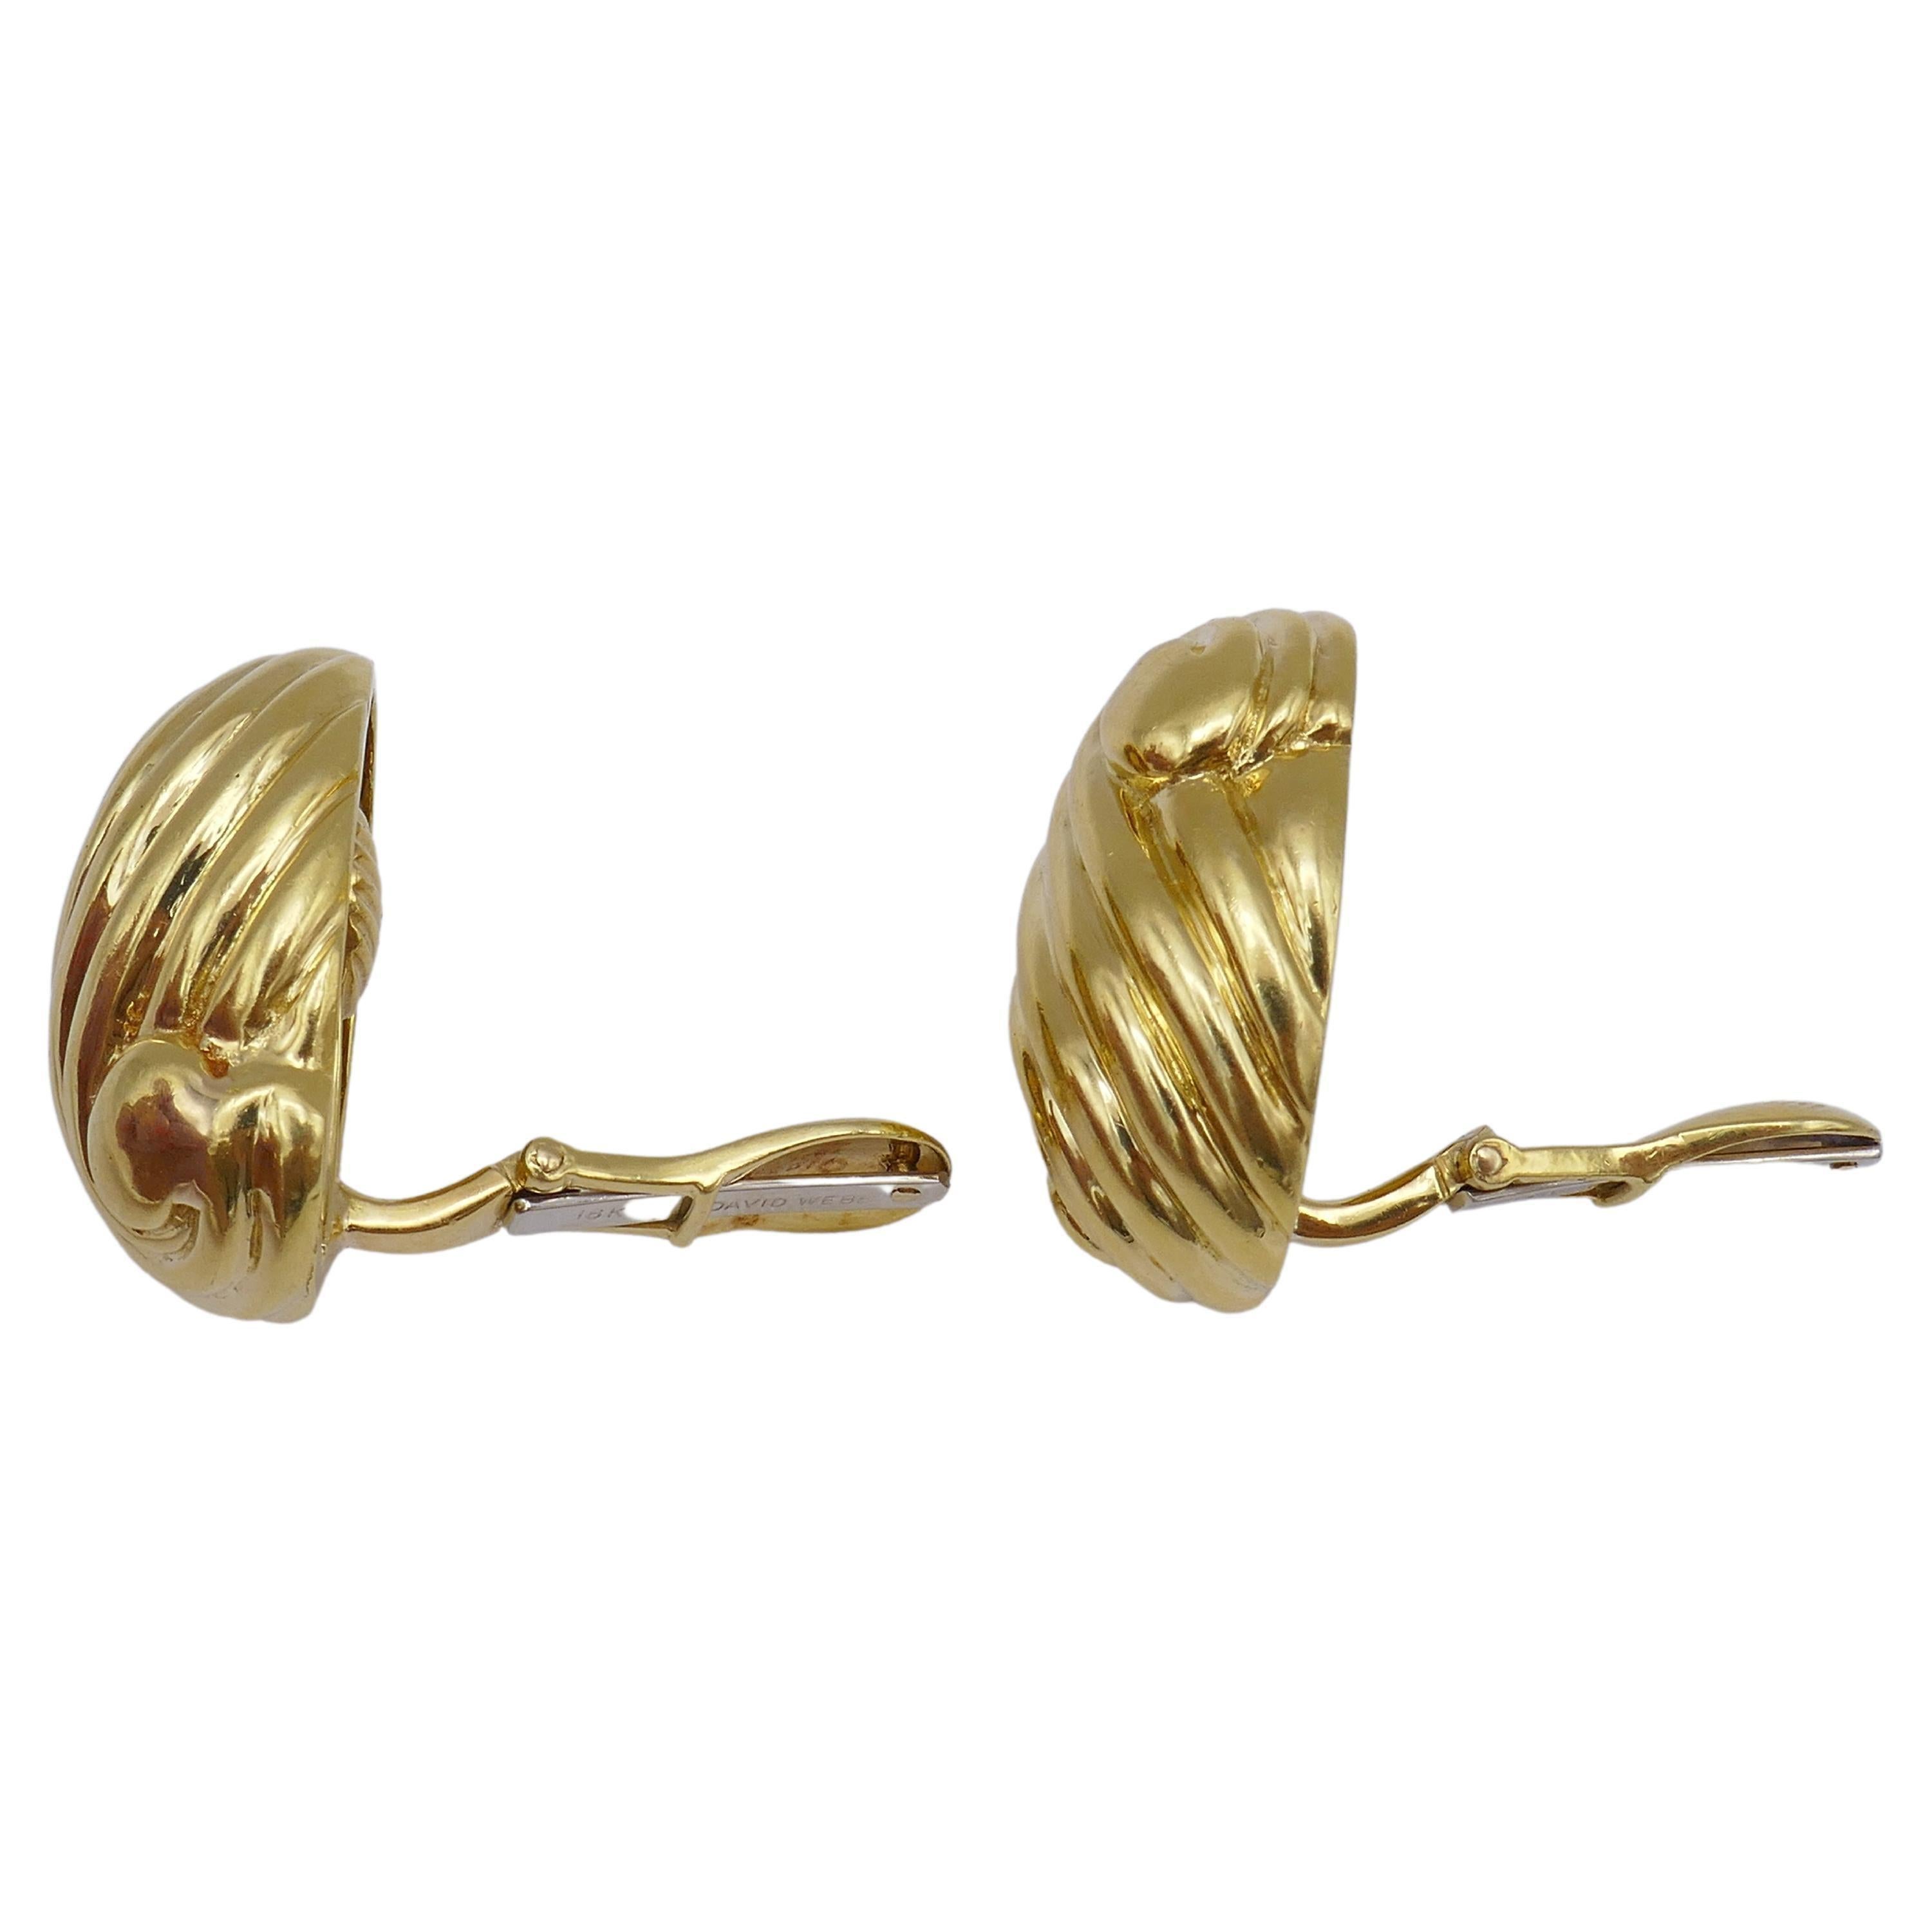 Une paire de boucles d'oreilles en or David Webb avec le motif de la coquille tourbillonnante. 
Boucles d'oreilles classiques en or 18 carats, à porter tous les jours, mais avec la touche de luxe caractéristique de Webb's.
Il s'agit d'une paire de